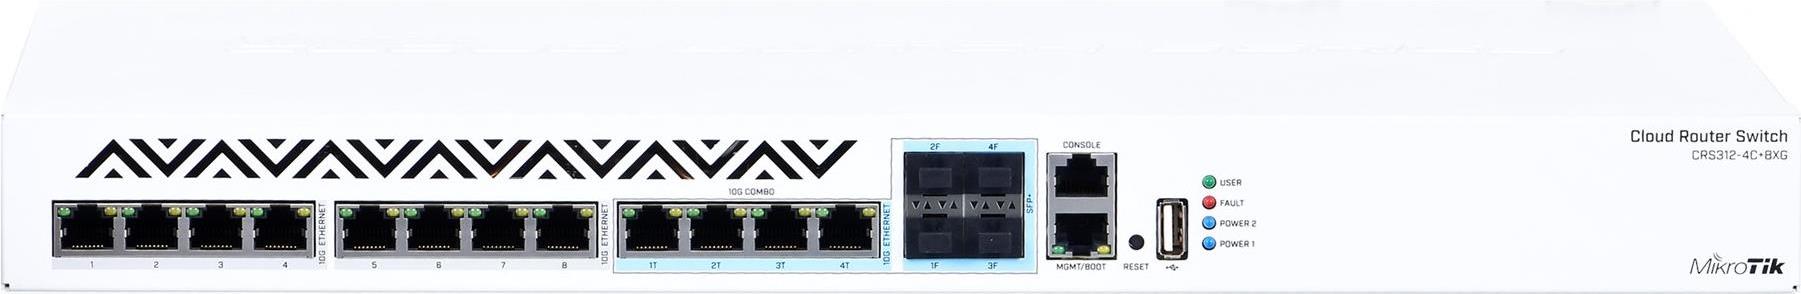 MIKROTIK Cloud Router Switch CRS312-4C+8XG-RM